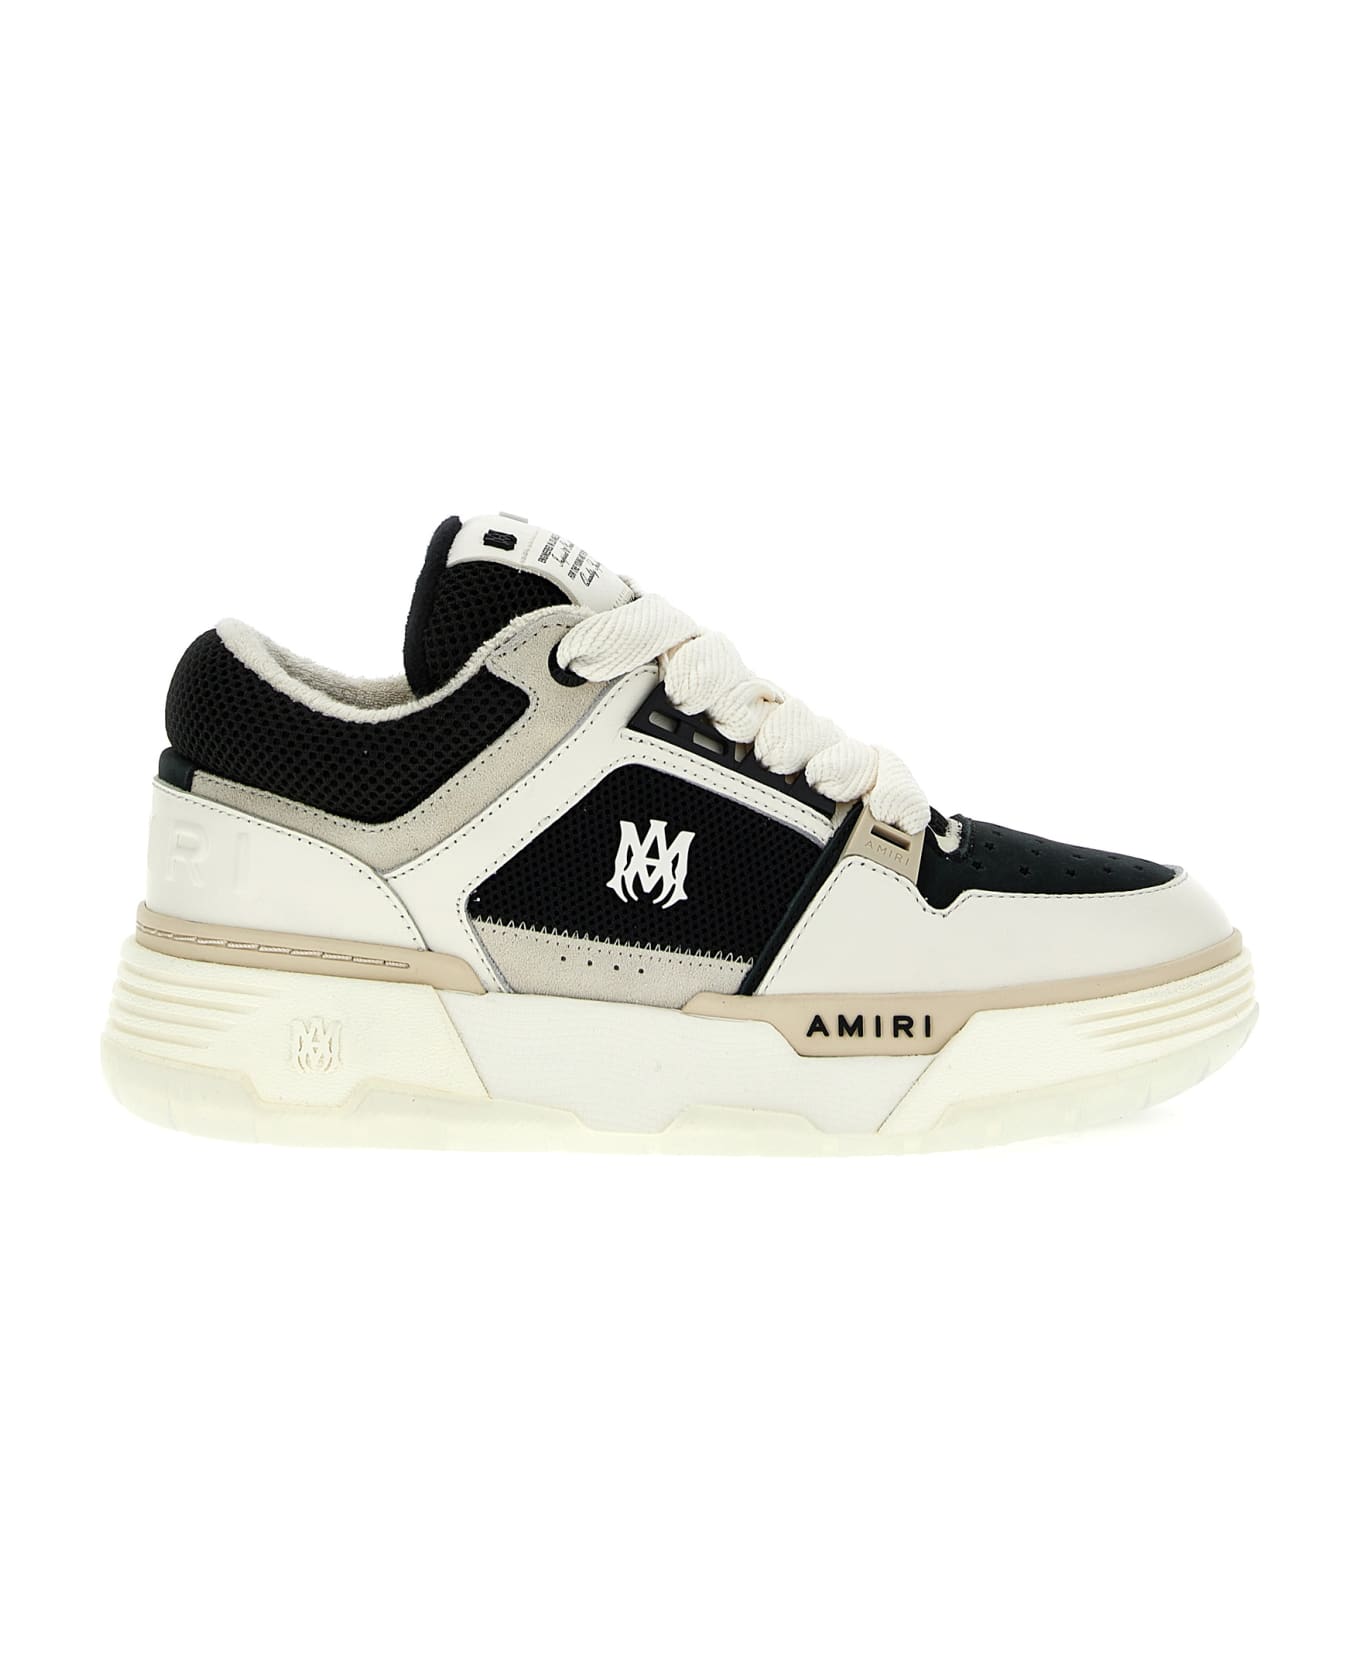 AMIRI 'ma-1' Sneakers - White/Black